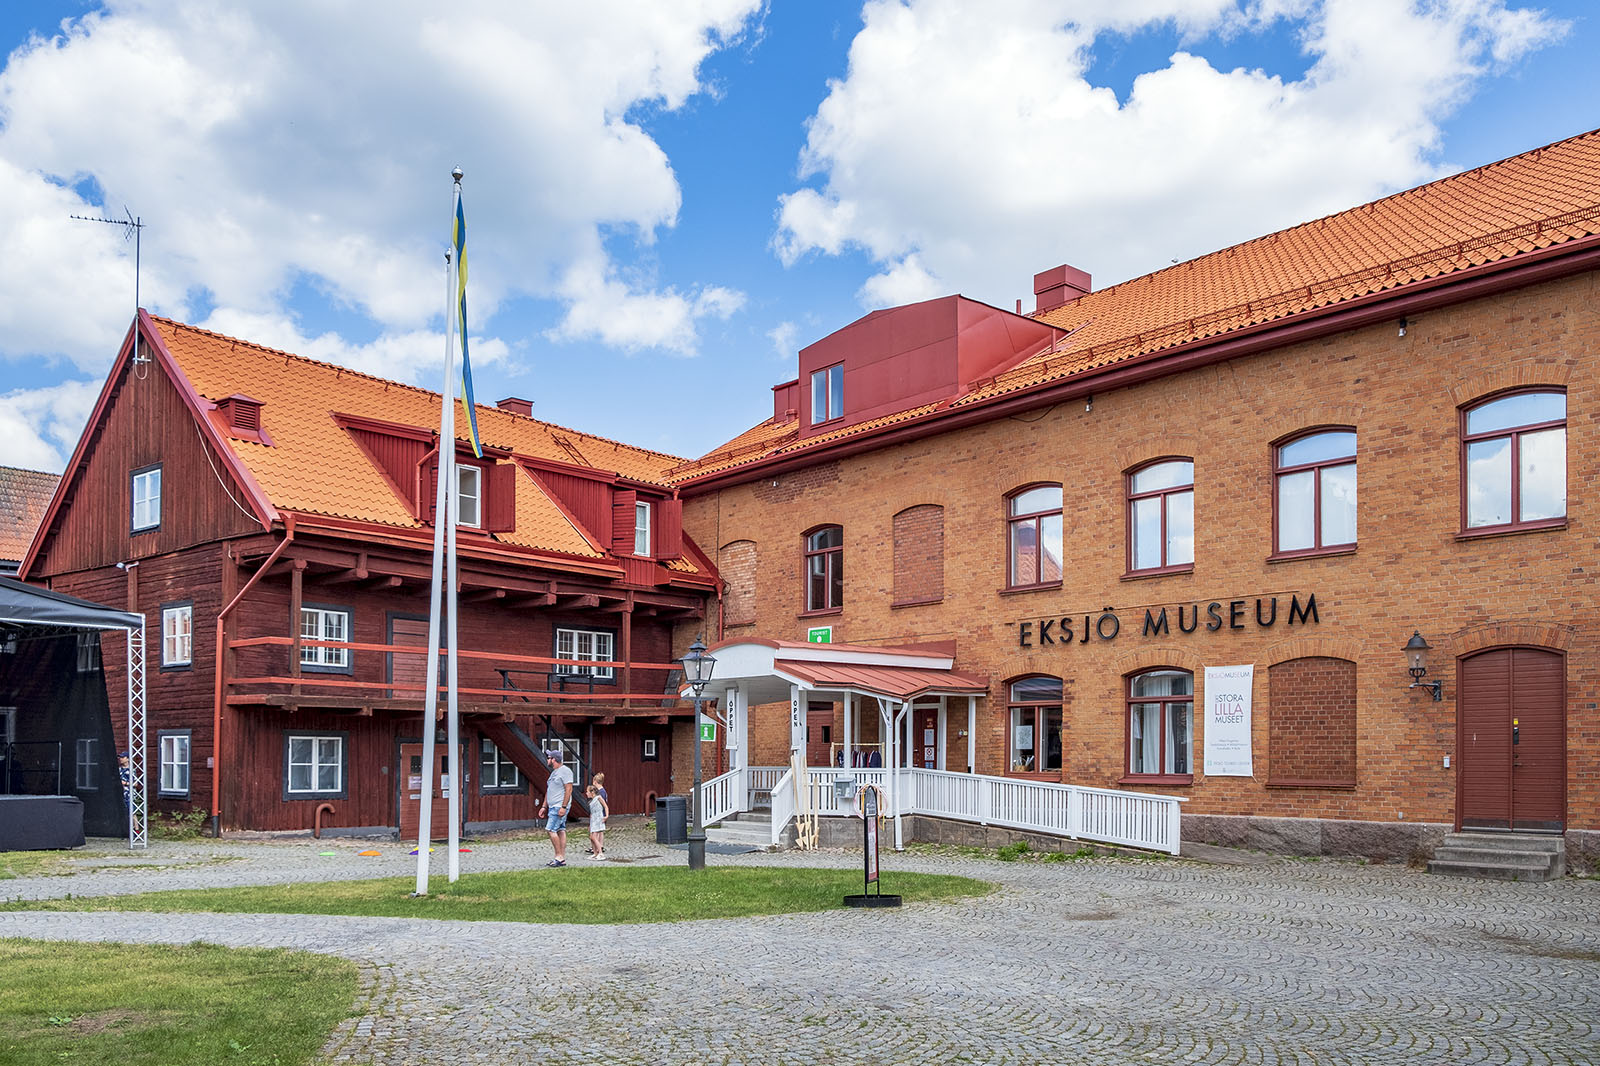 Eksjö museum